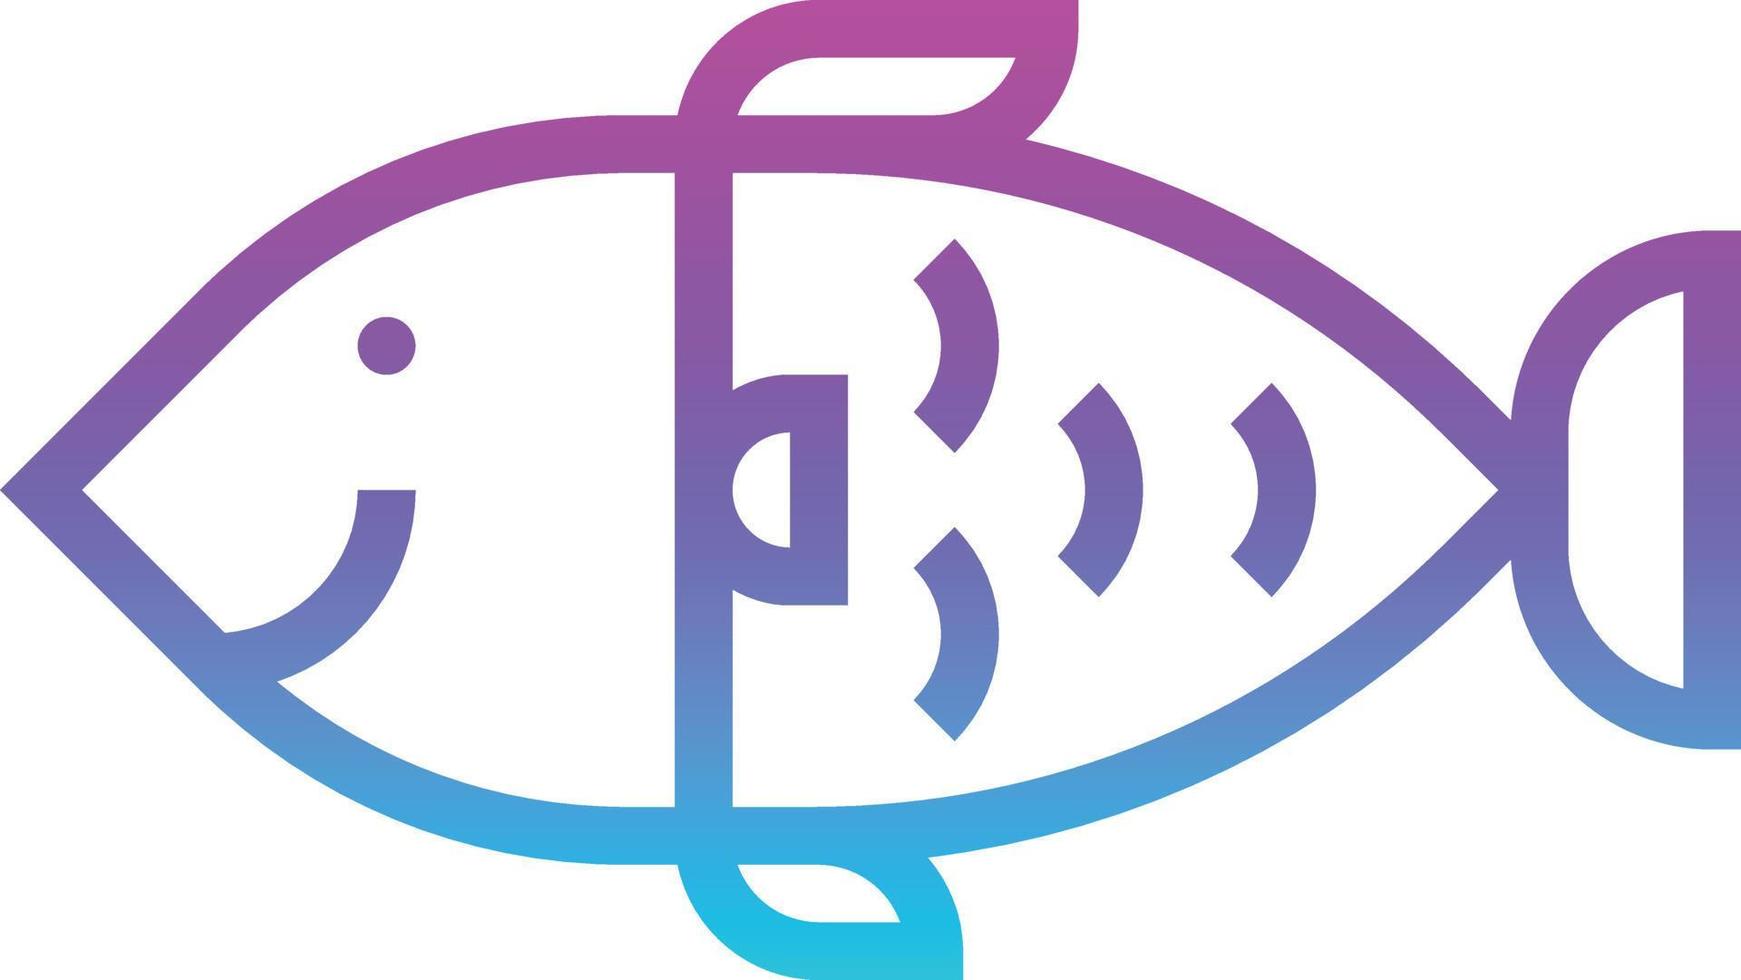 Fischfutter Fleisch - Verlaufssymbol vektor